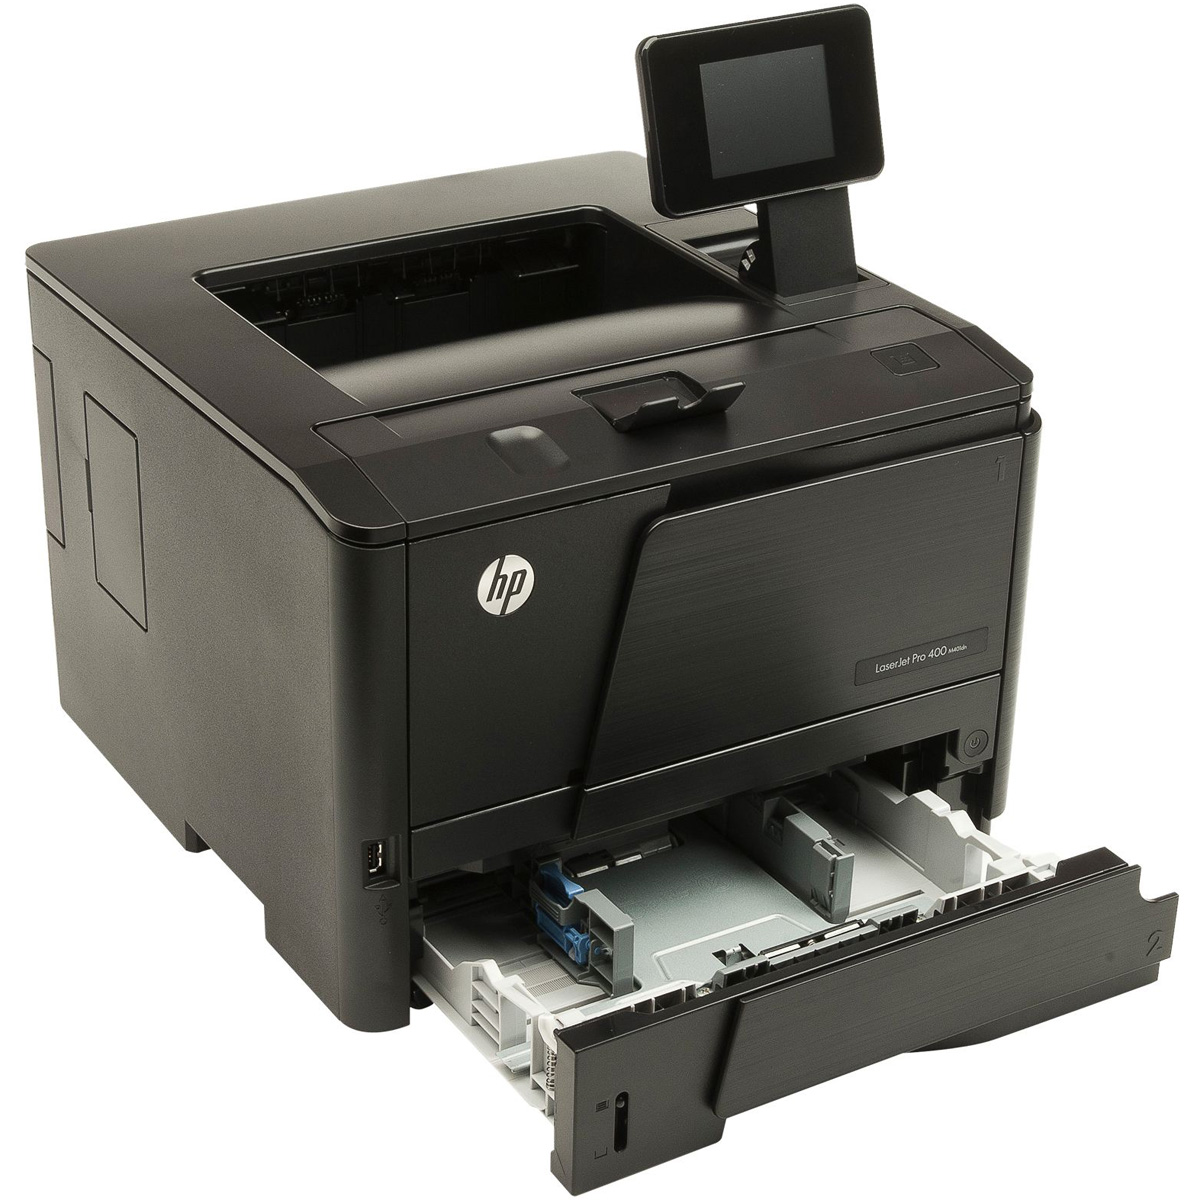 HP LaserJet Pro 400 M401dn [CF278A]